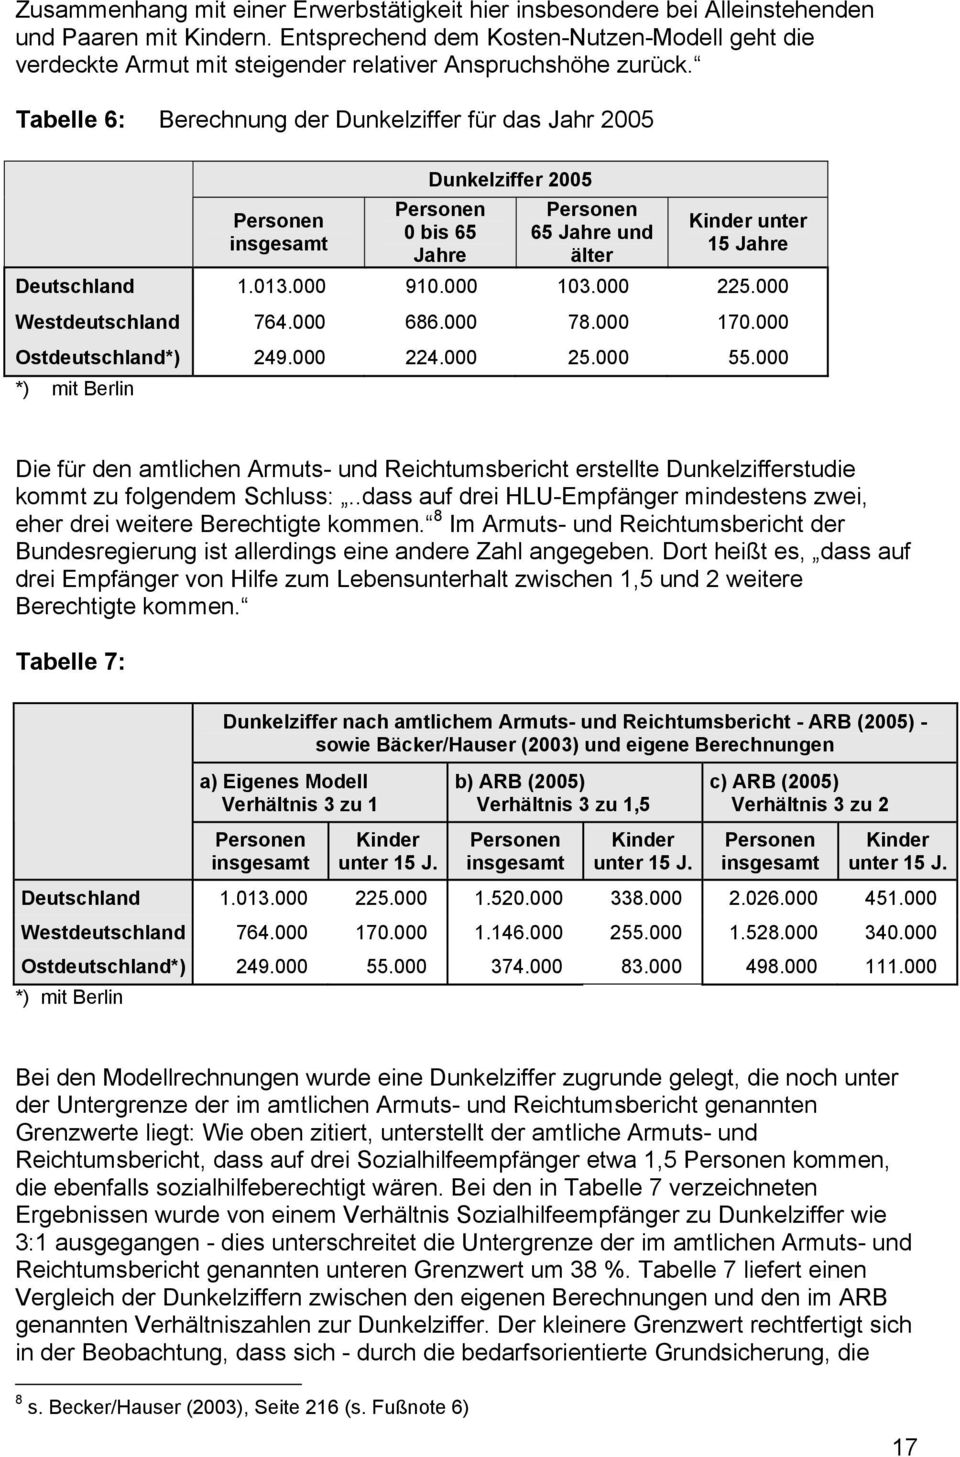 Tabelle 6: Berechnung der Dunkelziffer für das Jahr 2005 Personen insgesamt Dunkelziffer 2005 Personen 0 bis 65 Jahre Personen 65 Jahre und älter Kinder unter 15 Jahre Deutschland 1.013.000 910.